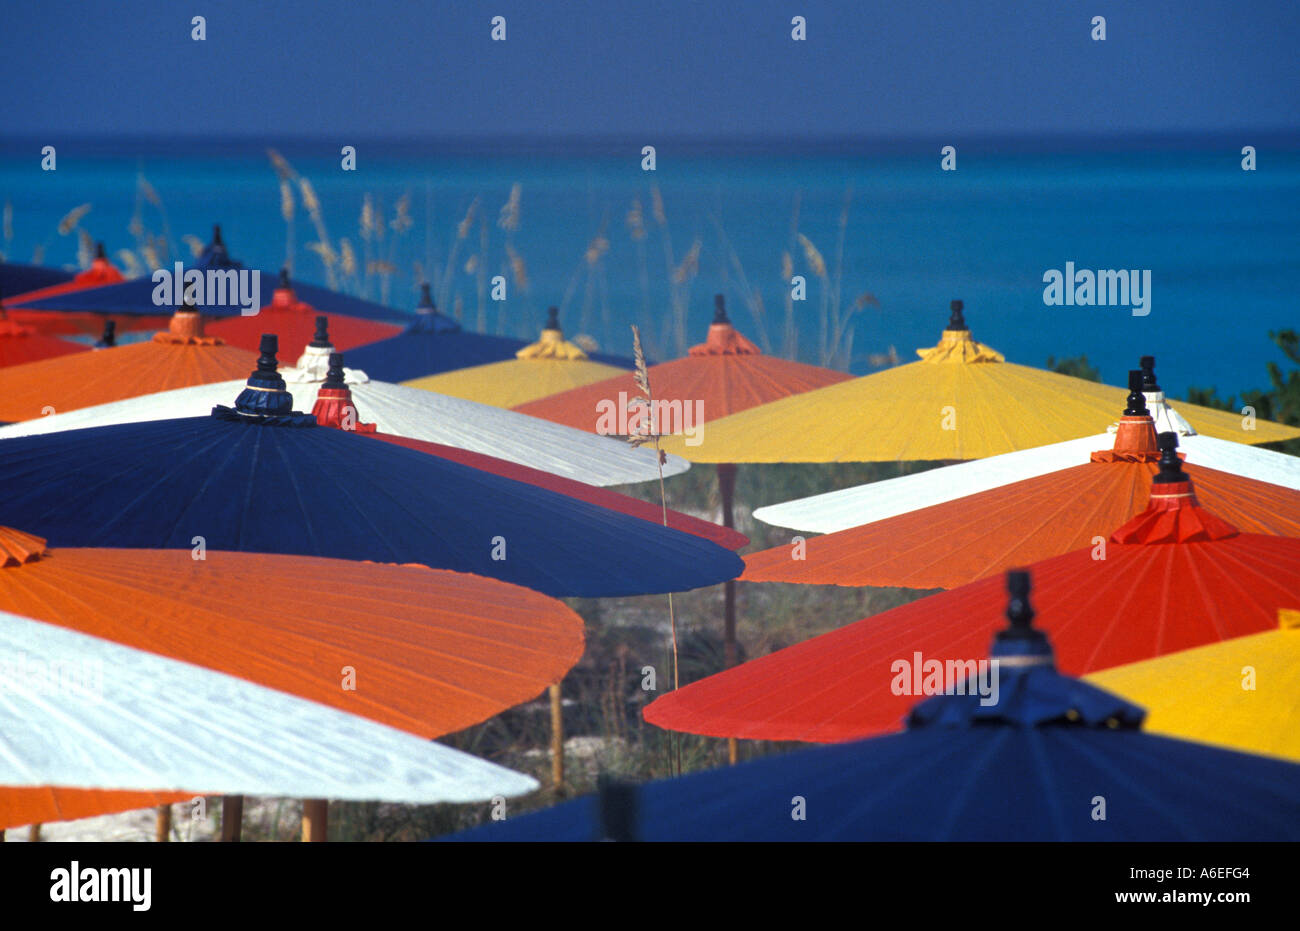 Strand Sonnenschirme rot gelb blau weiß orange blau Wasser helle Hintergrundfarben Stockfoto